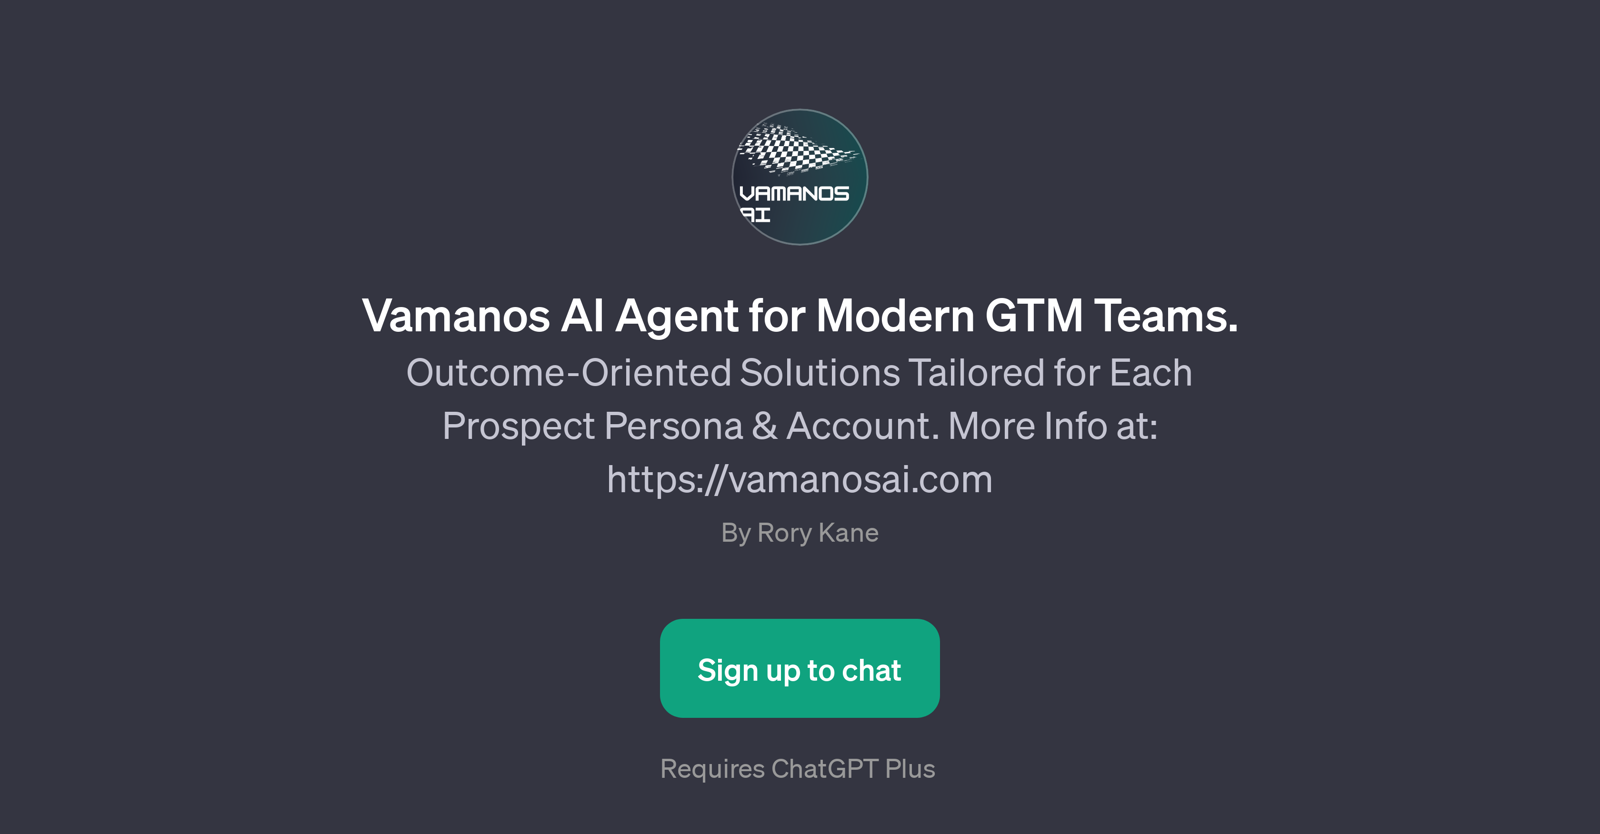 Vamanos AI Agent website